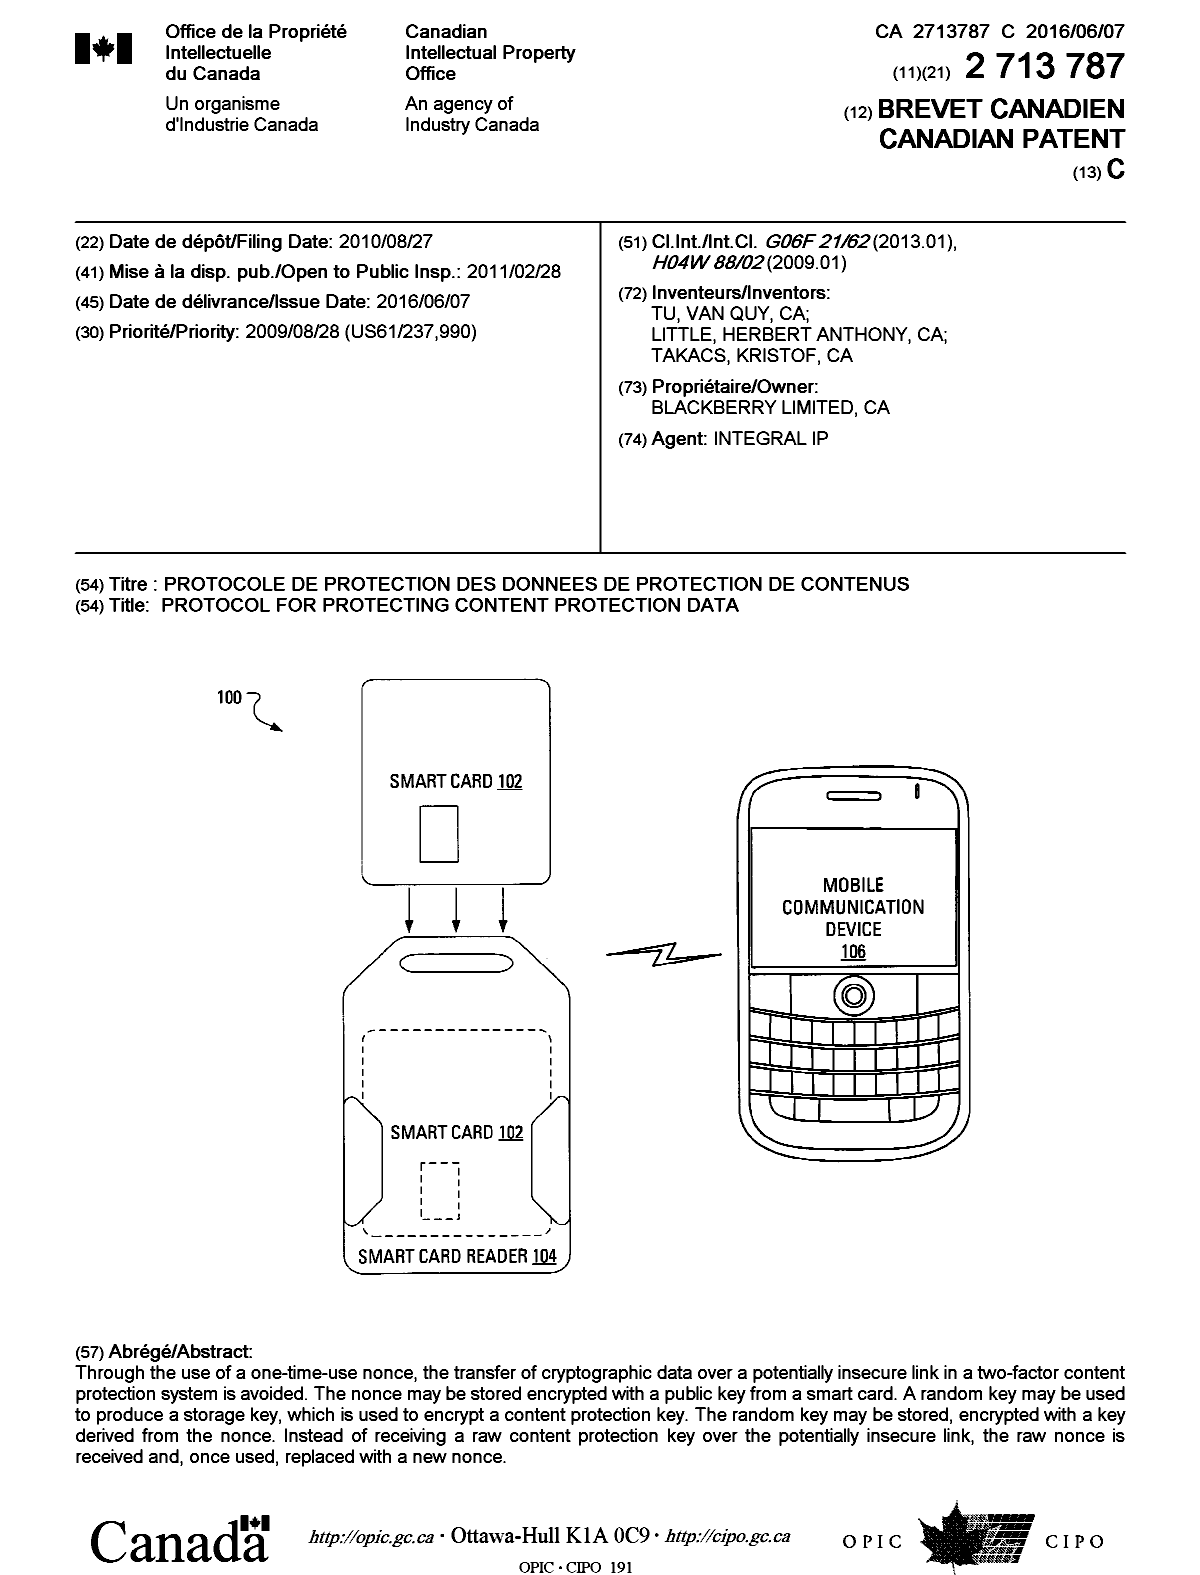 Document de brevet canadien 2713787. Page couverture 20151214. Image 1 de 1